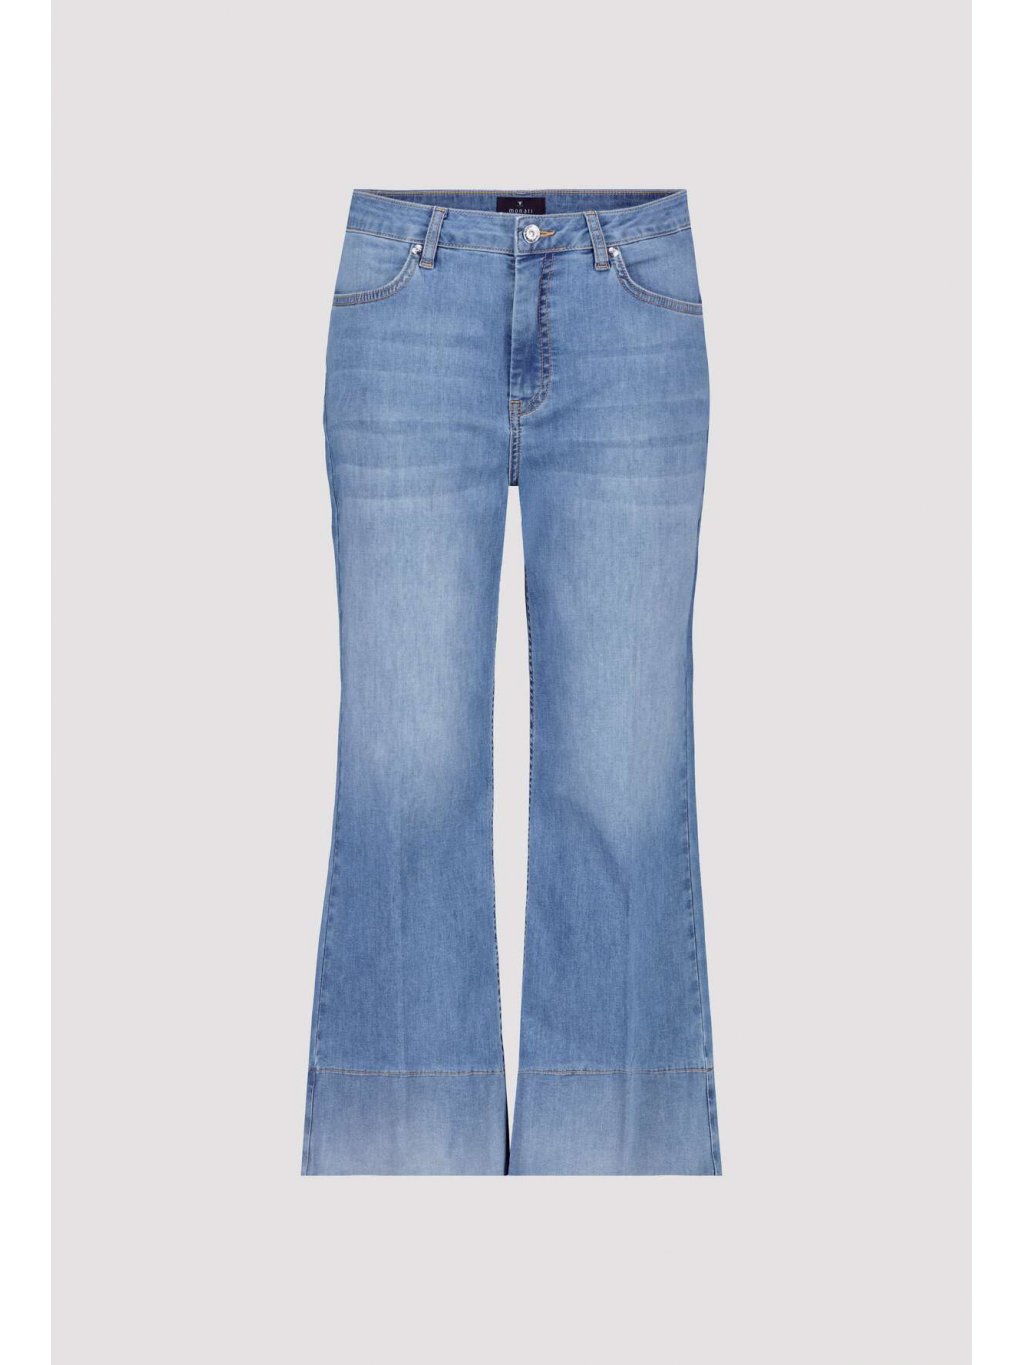 Kalhoty Monari 8343 středné modré džíny zkrácené